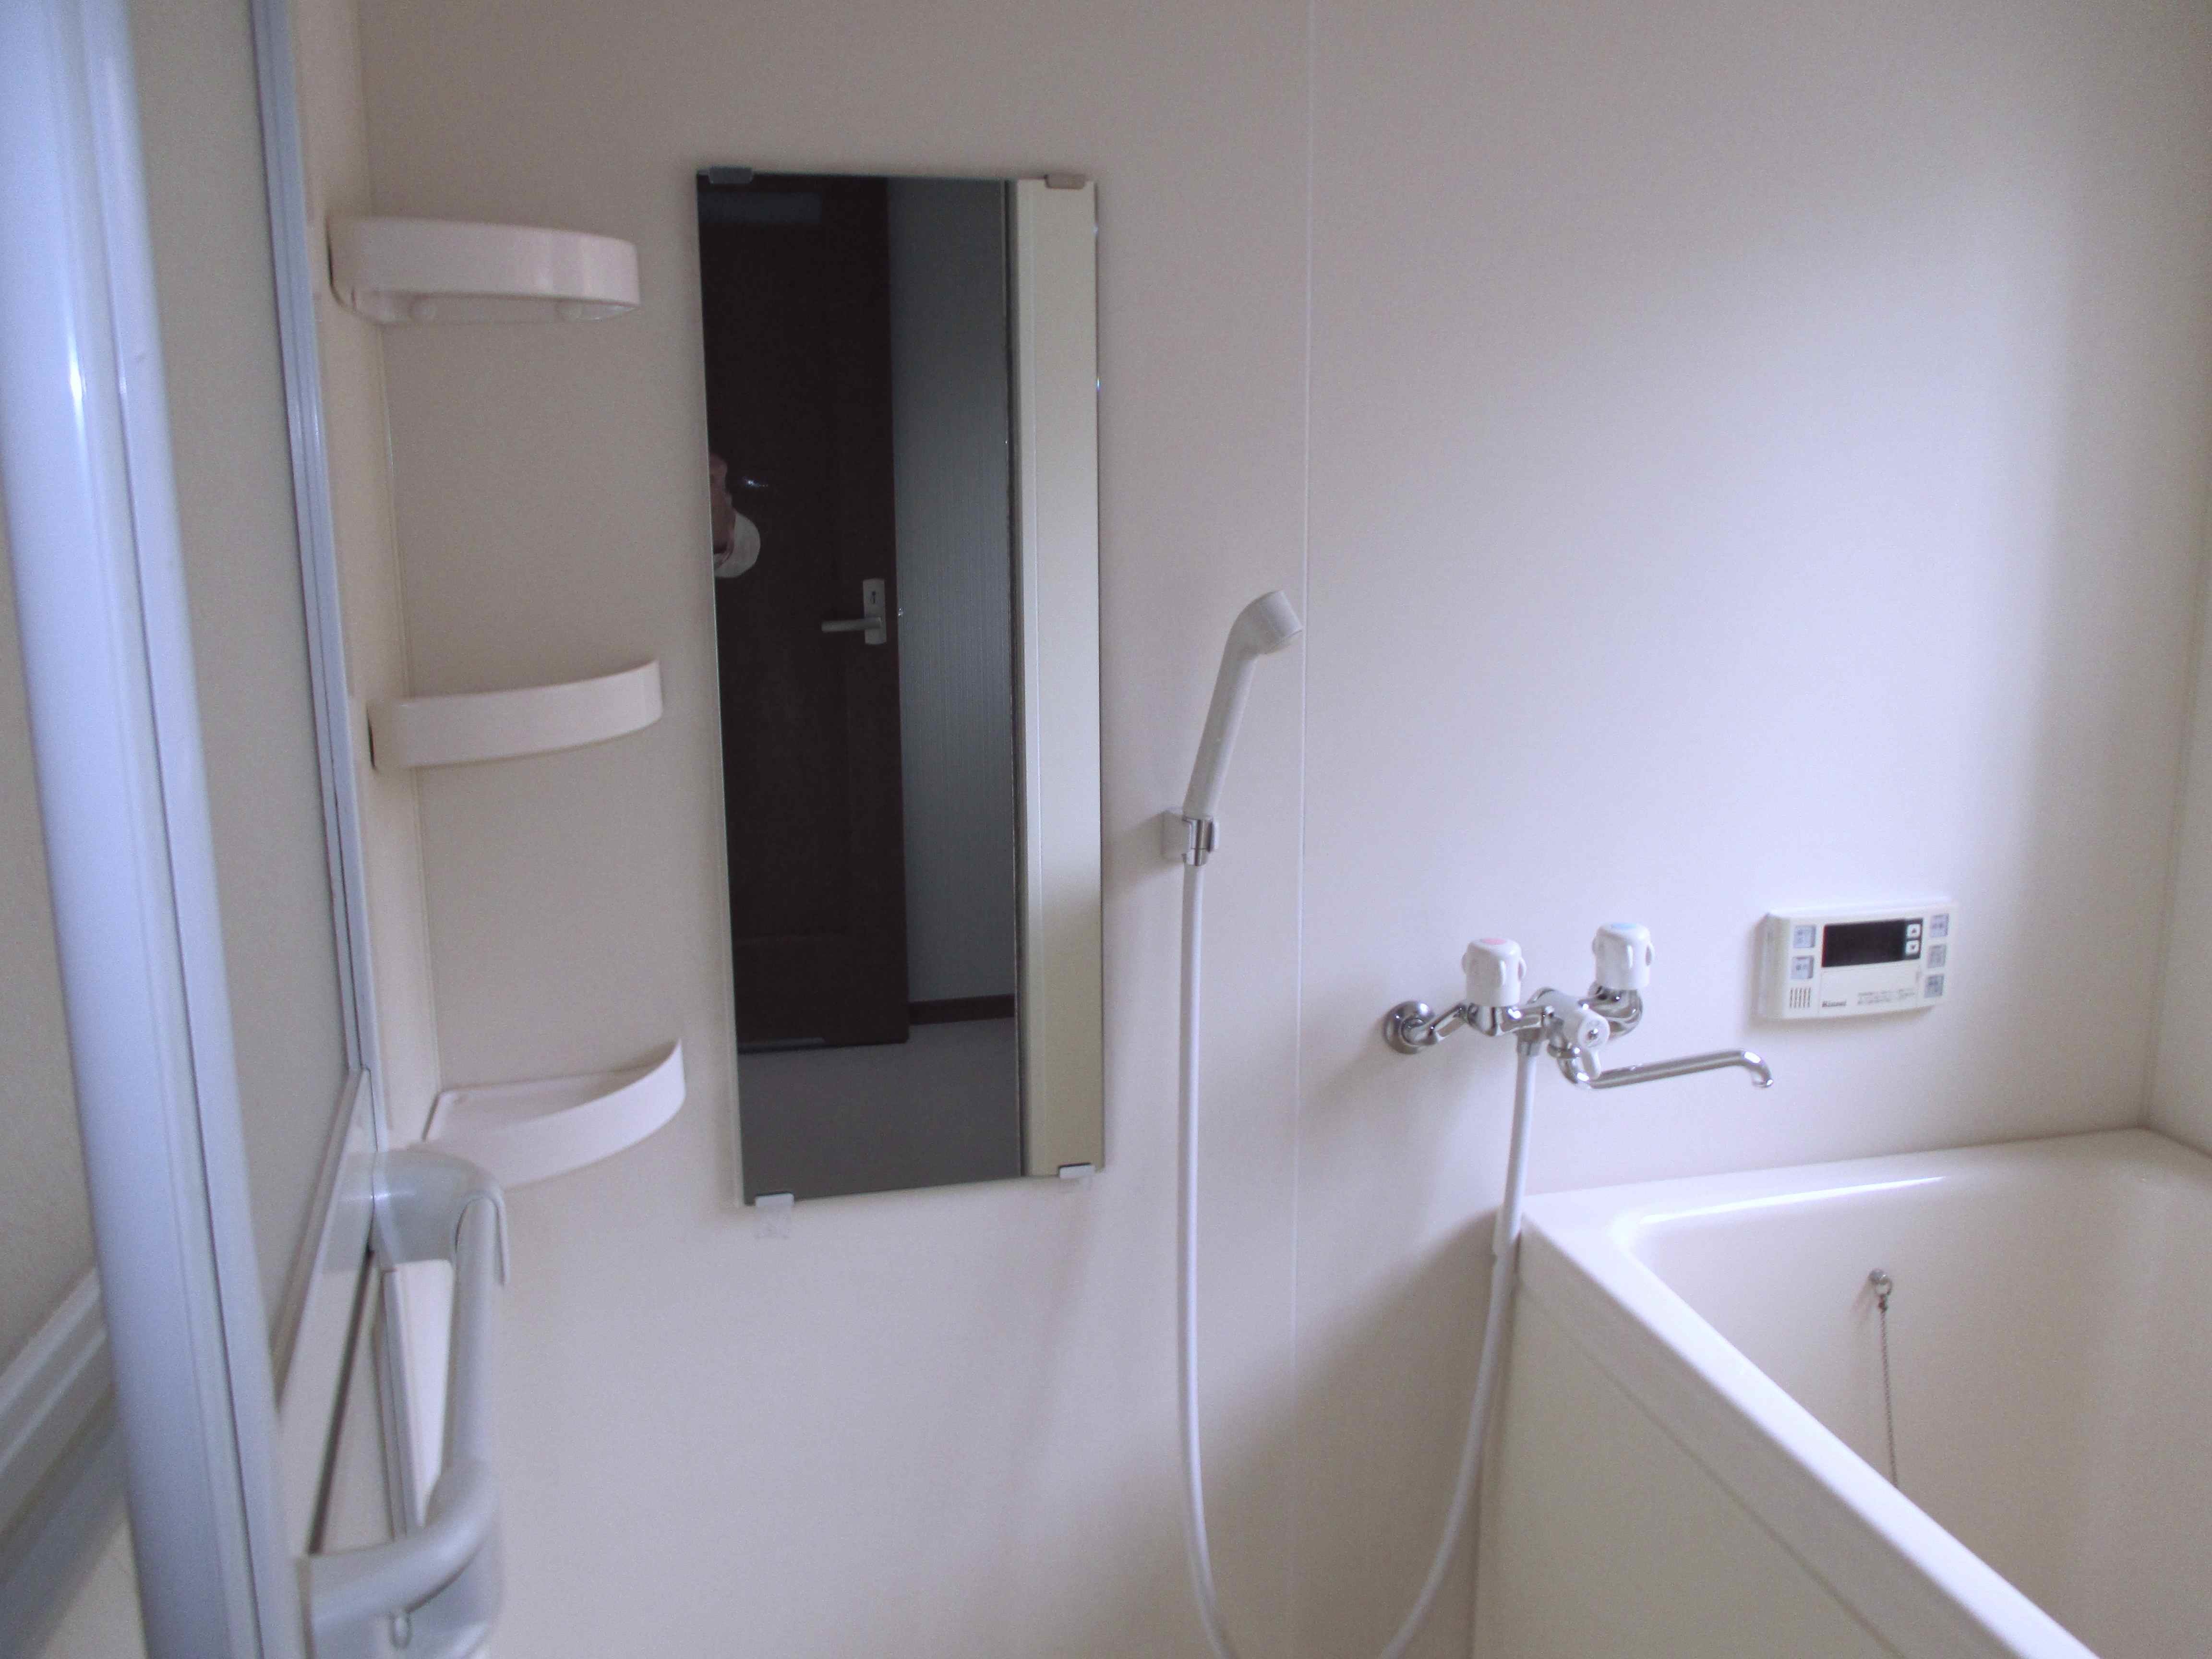 浴室ドア補修と鏡の交換　モリス正規販売店のブライト_c0157866_15300894.jpg